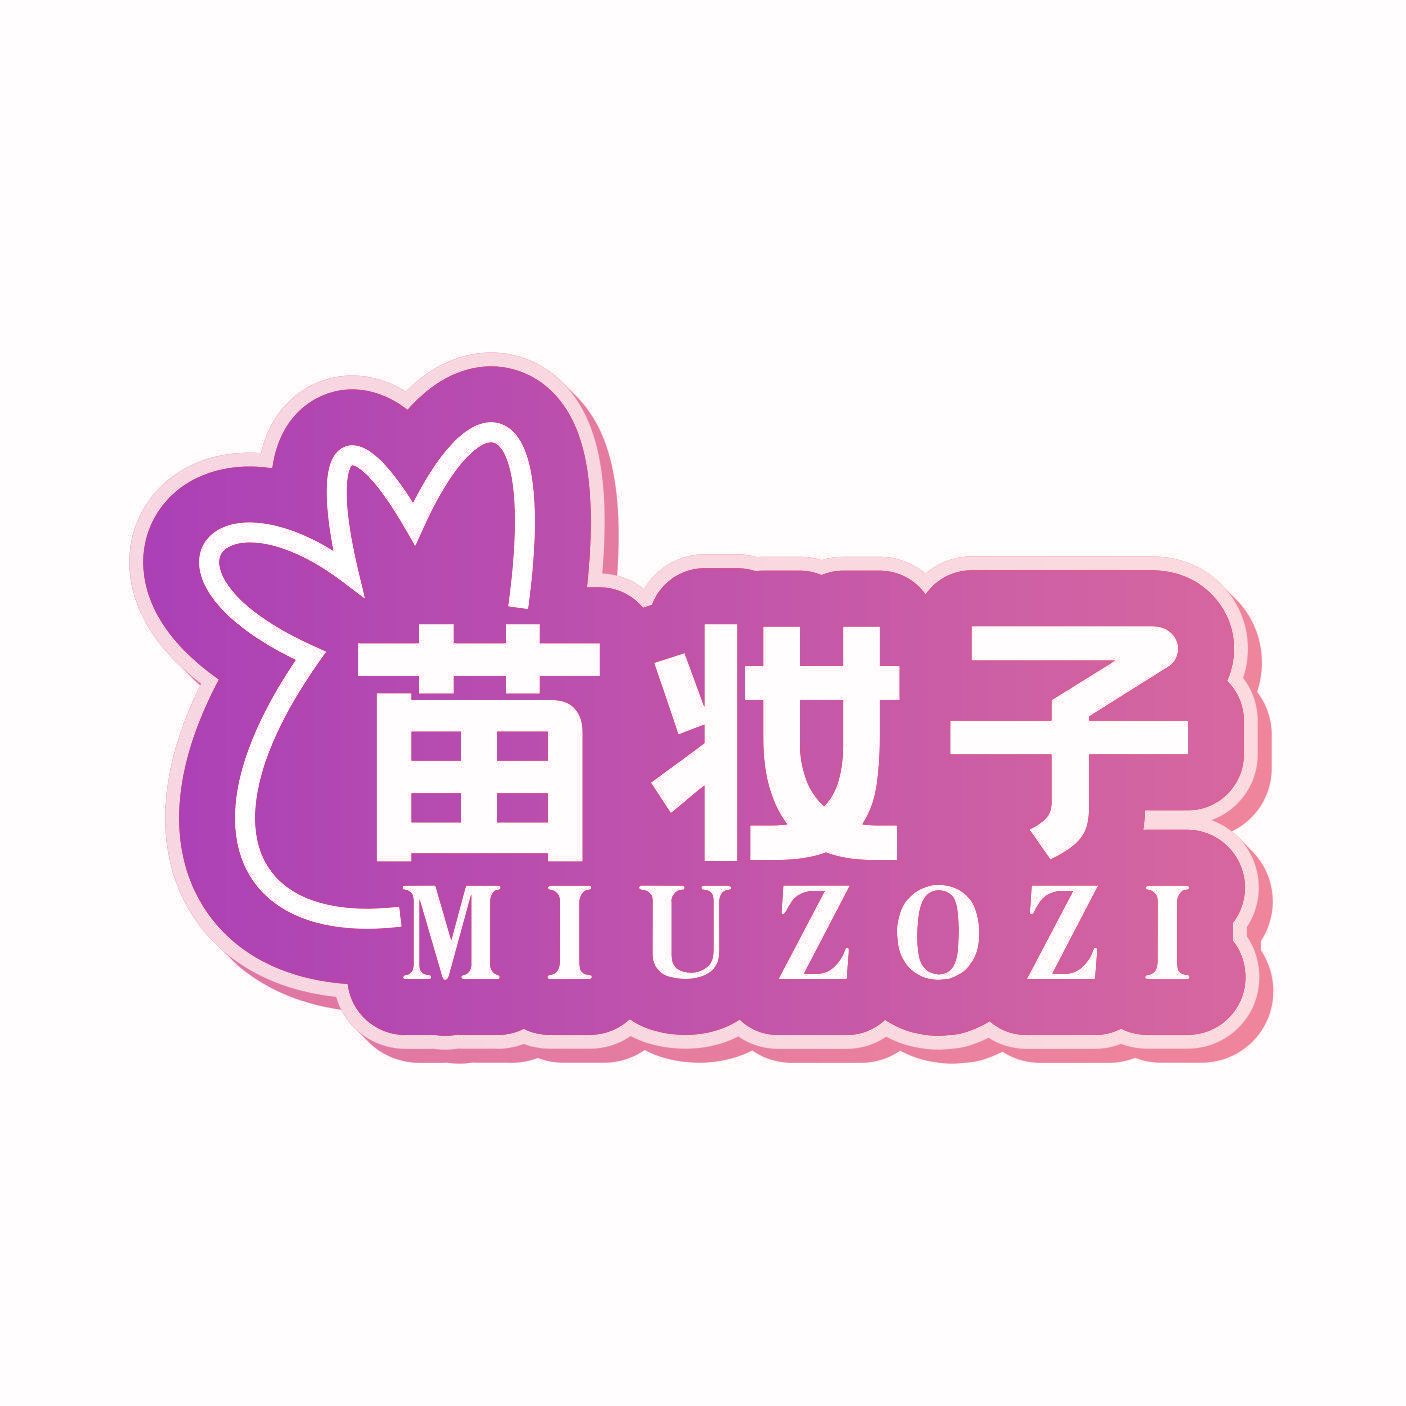 苗妆子 MIUZOZI